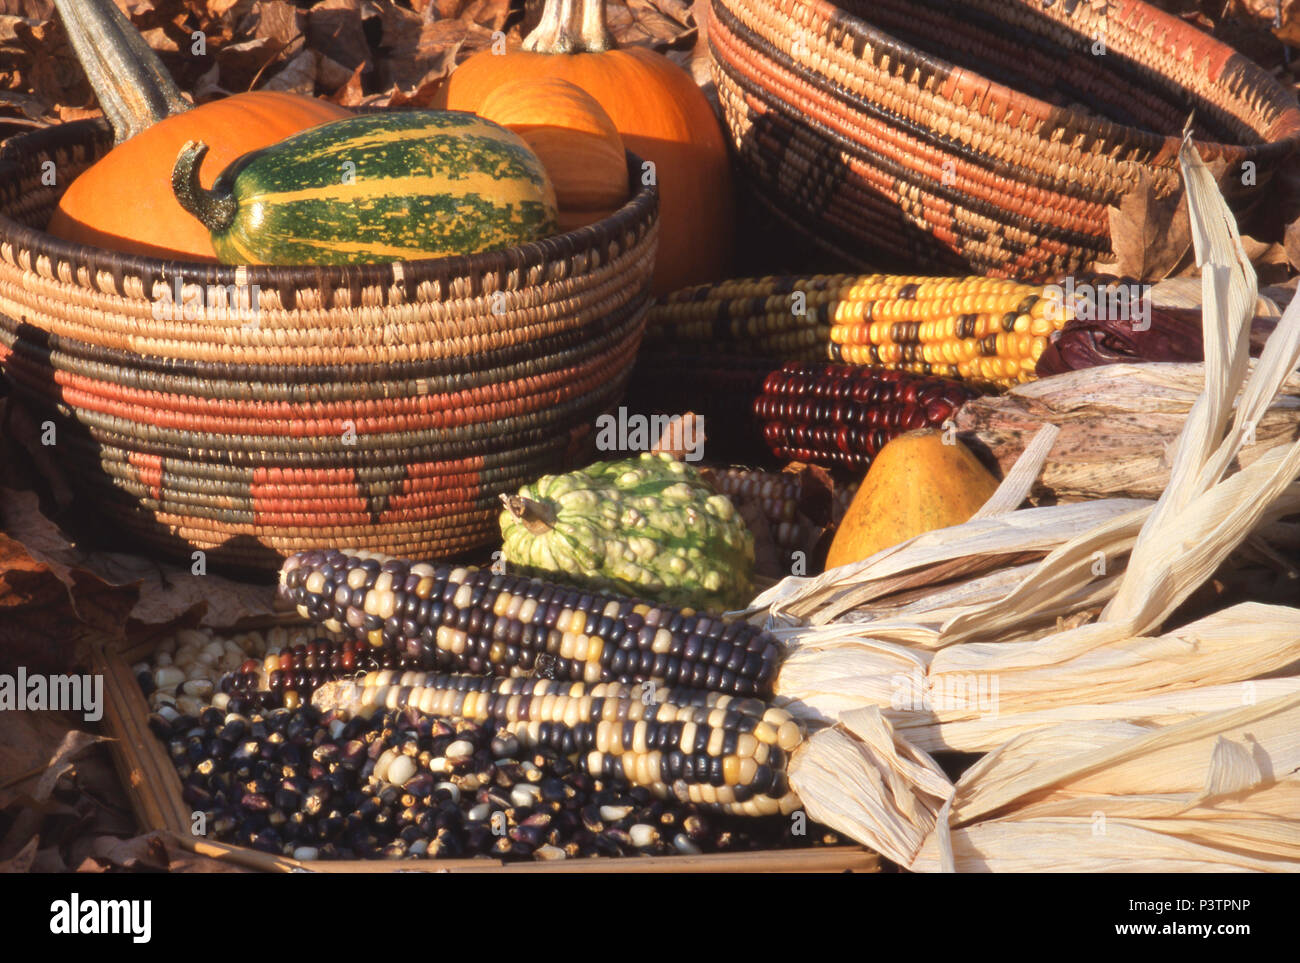 Unterschiedliche Farben der Native American Corn (Mais) und Squash. Foto Stockfoto